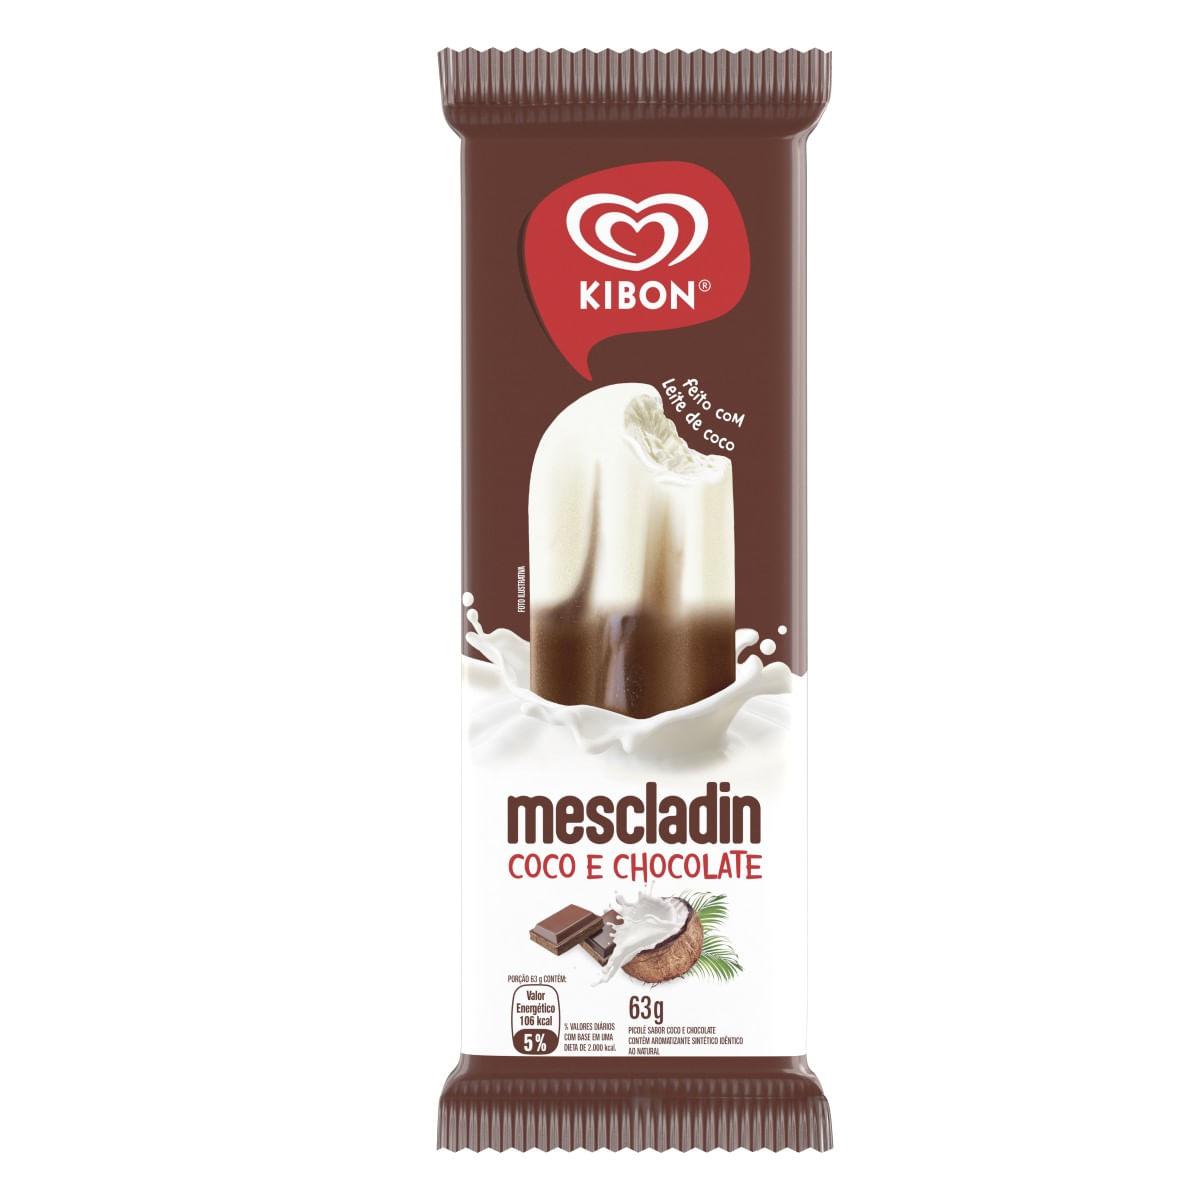 Picole Kibon Mescladin Coco E Chocolate